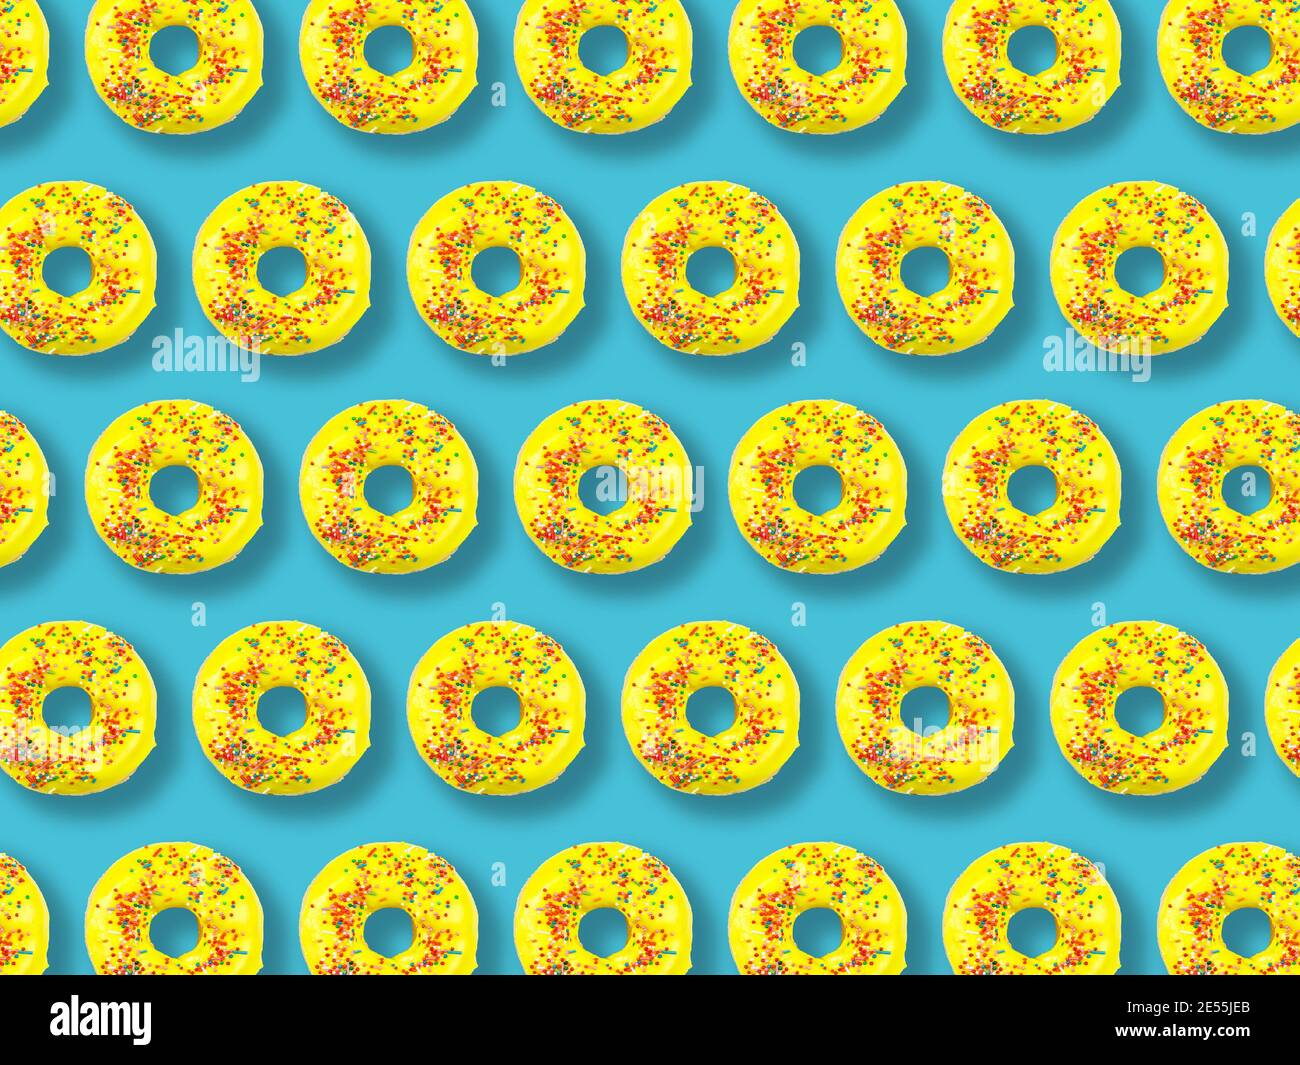 Motivo di ciambelle gialle su sfondo blu. Foto Stock